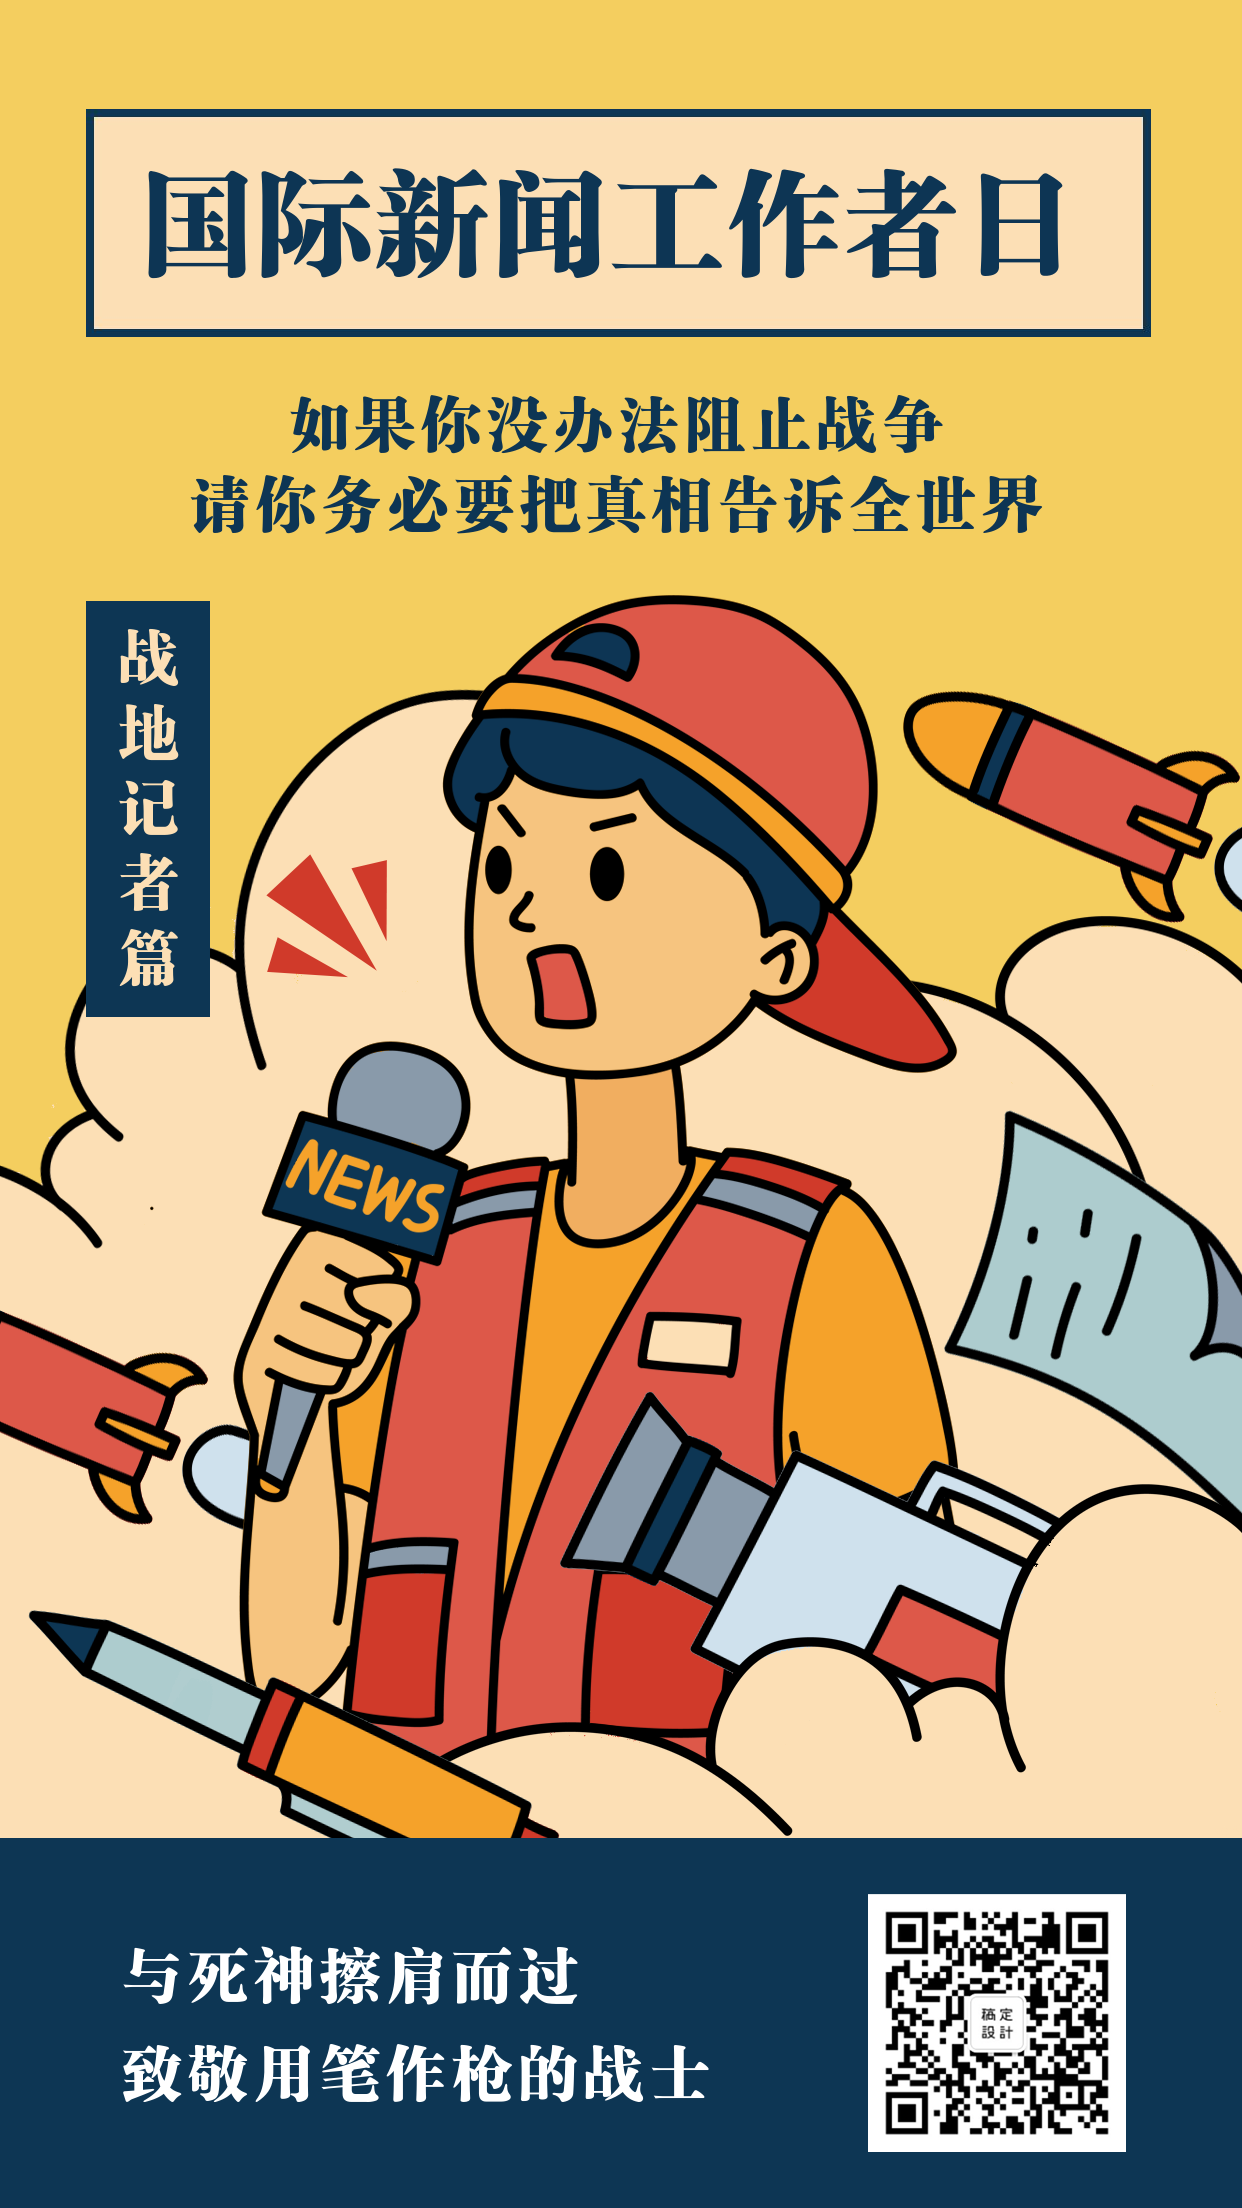 国际新闻工作者日/中国记者节节日祝福手绘手机海报